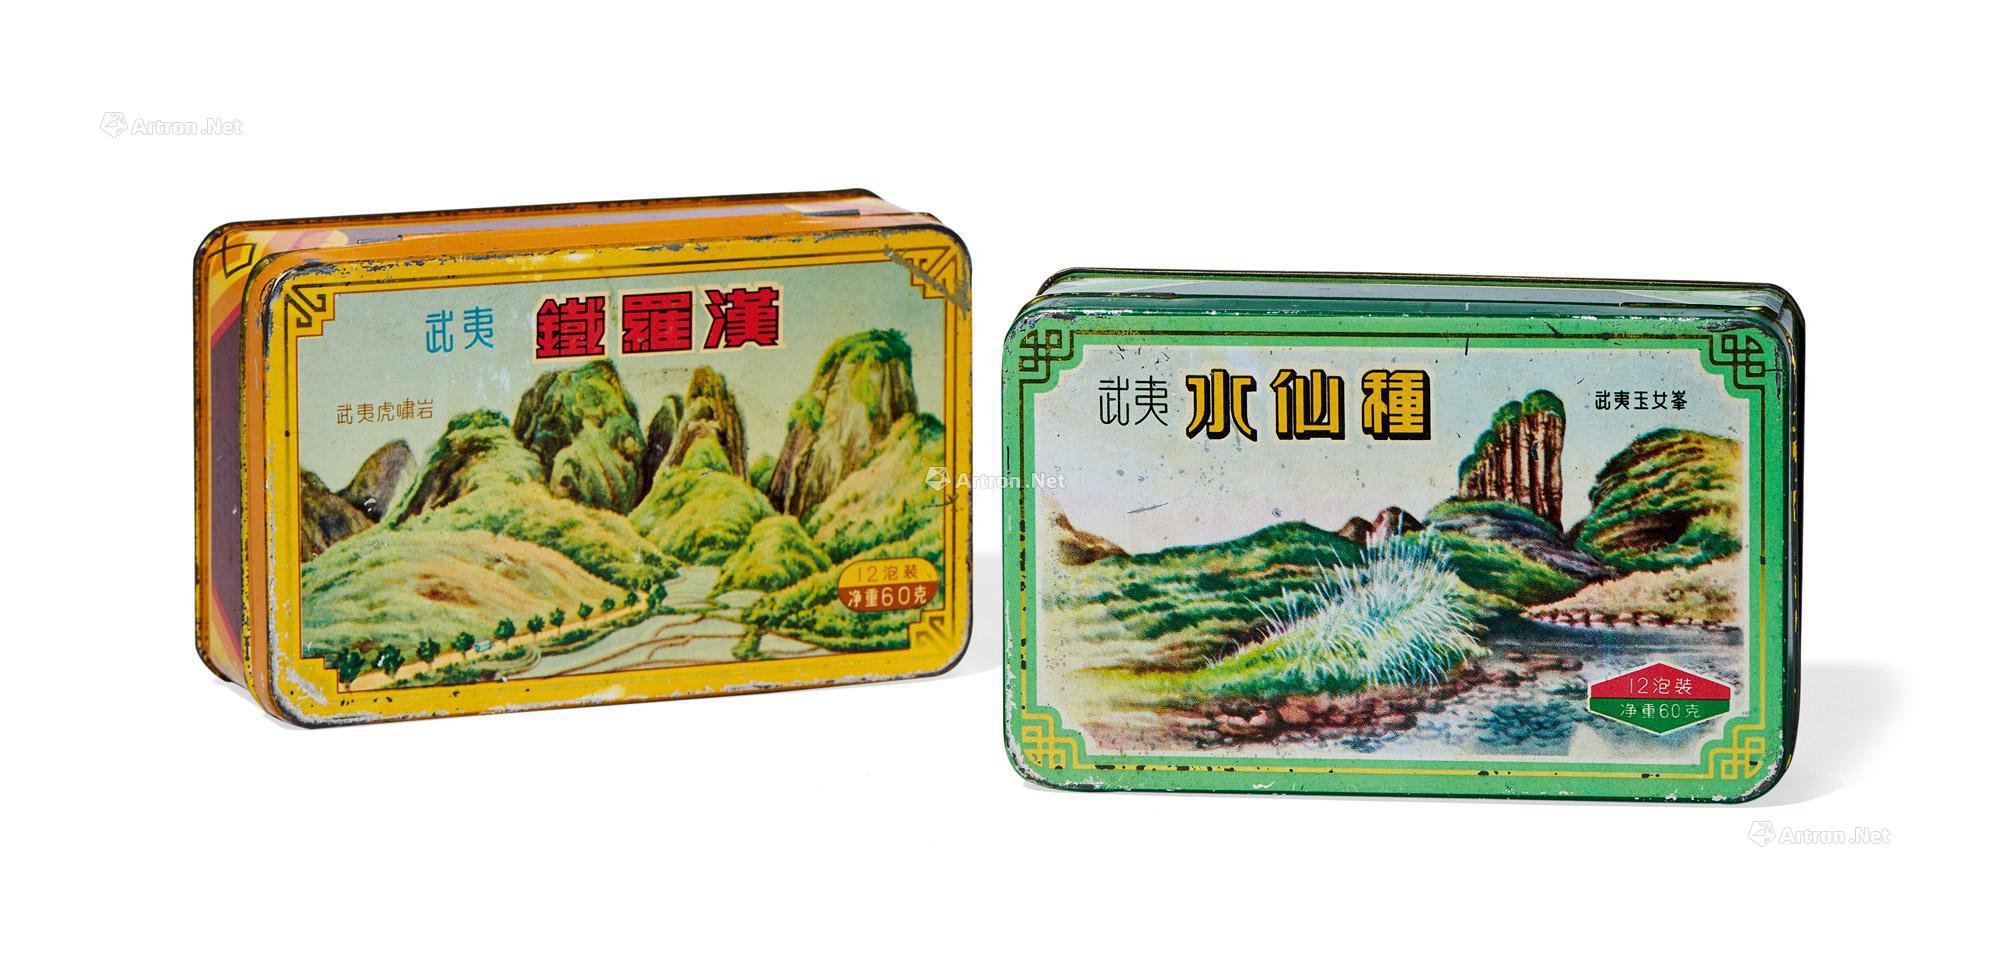 武夷岩茶中的铁罗汉-茶语网,当代茶文化推广者